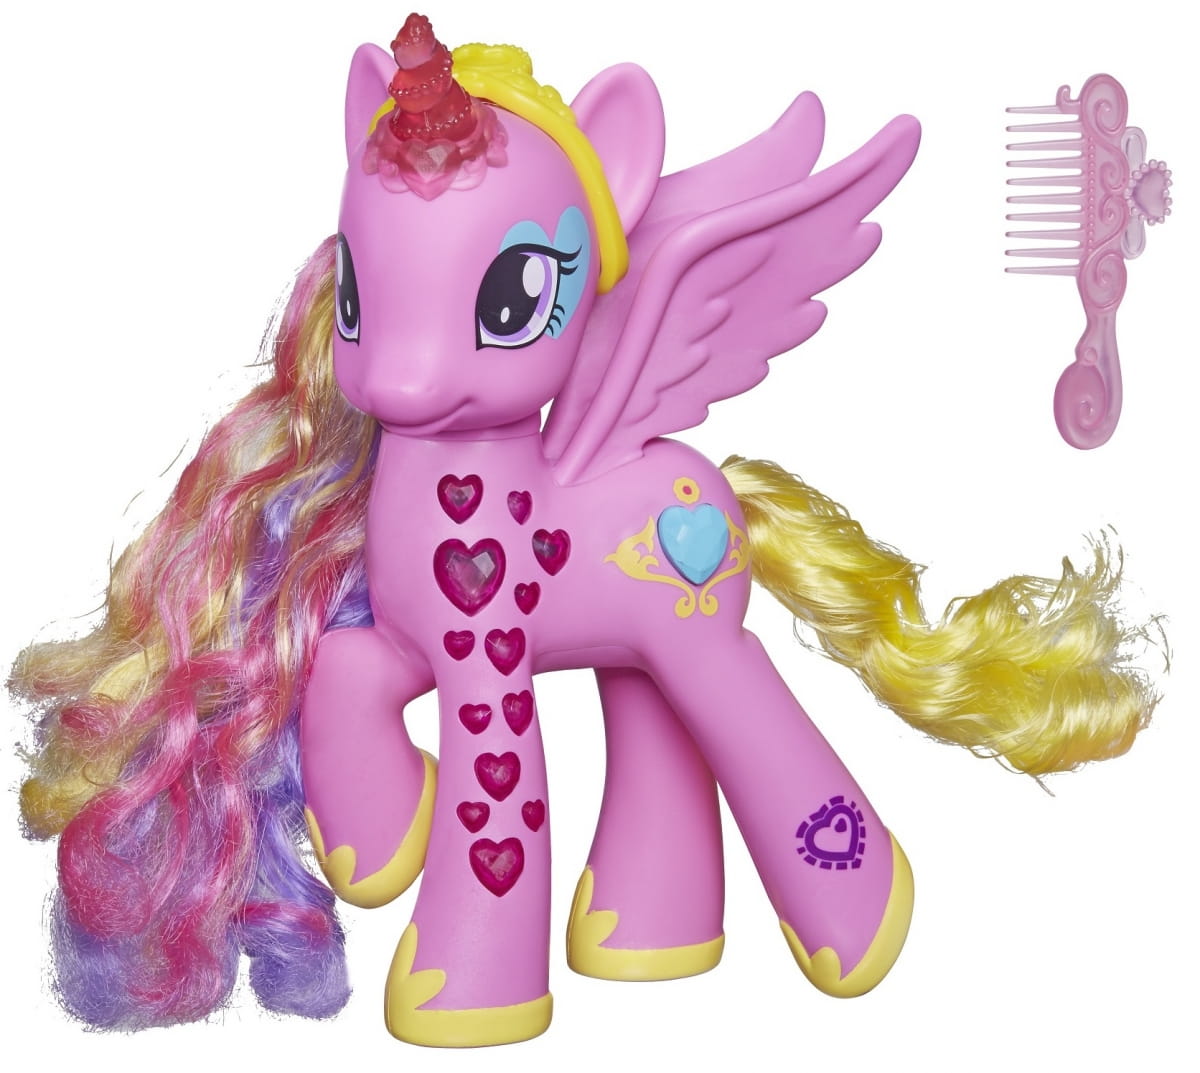    My Little Pony    (Hasbro)